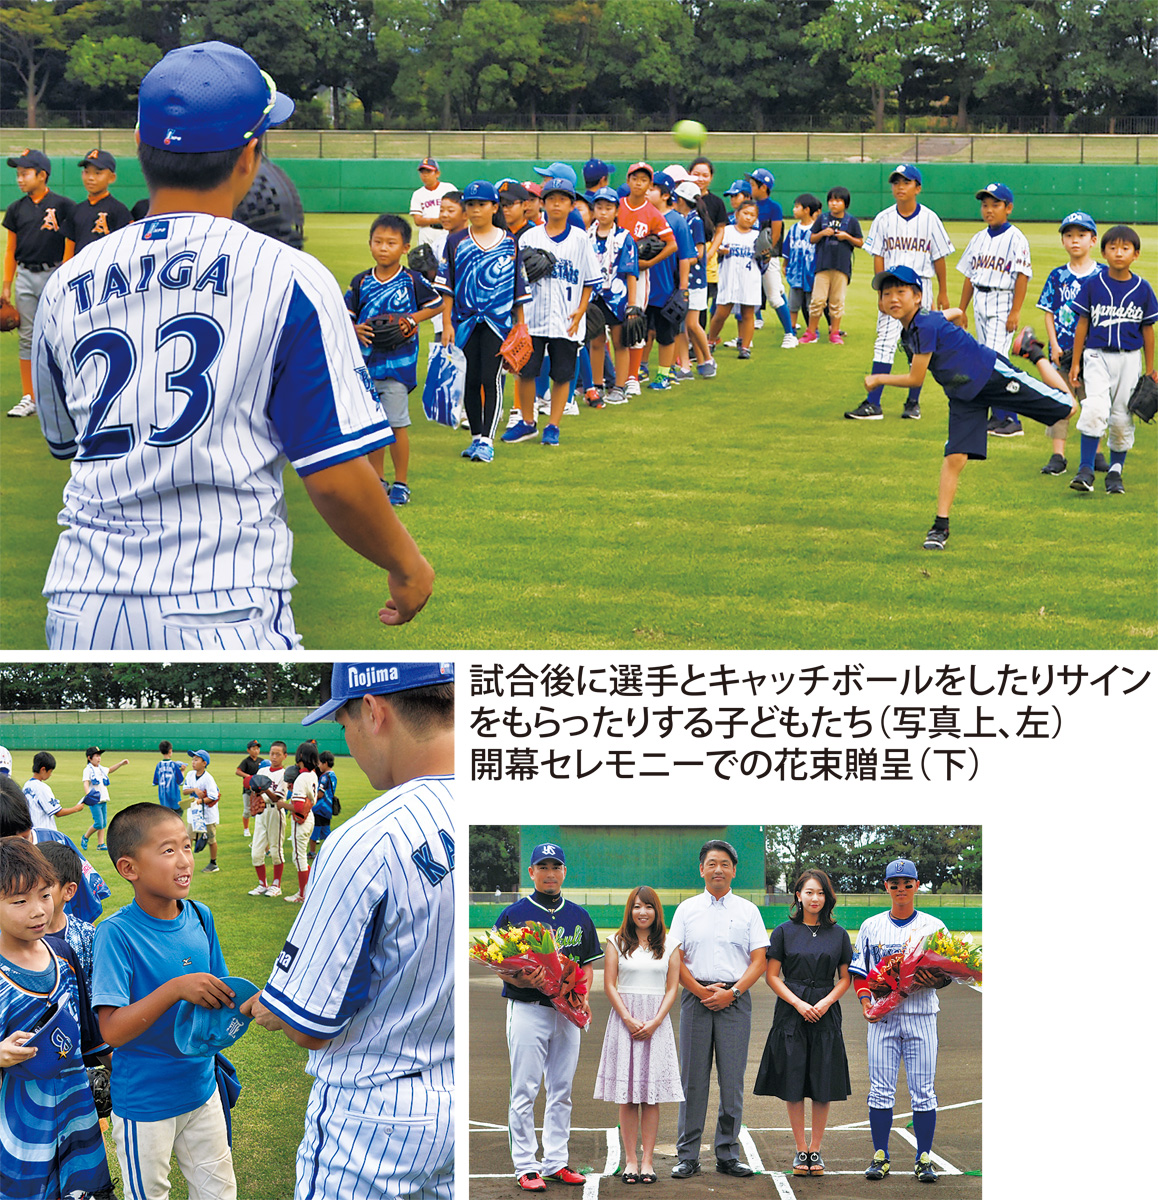 イースタン リーグ公式戦 プロ野球がやってきた 選手と交流も 小田原 箱根 湯河原 真鶴 タウンニュース